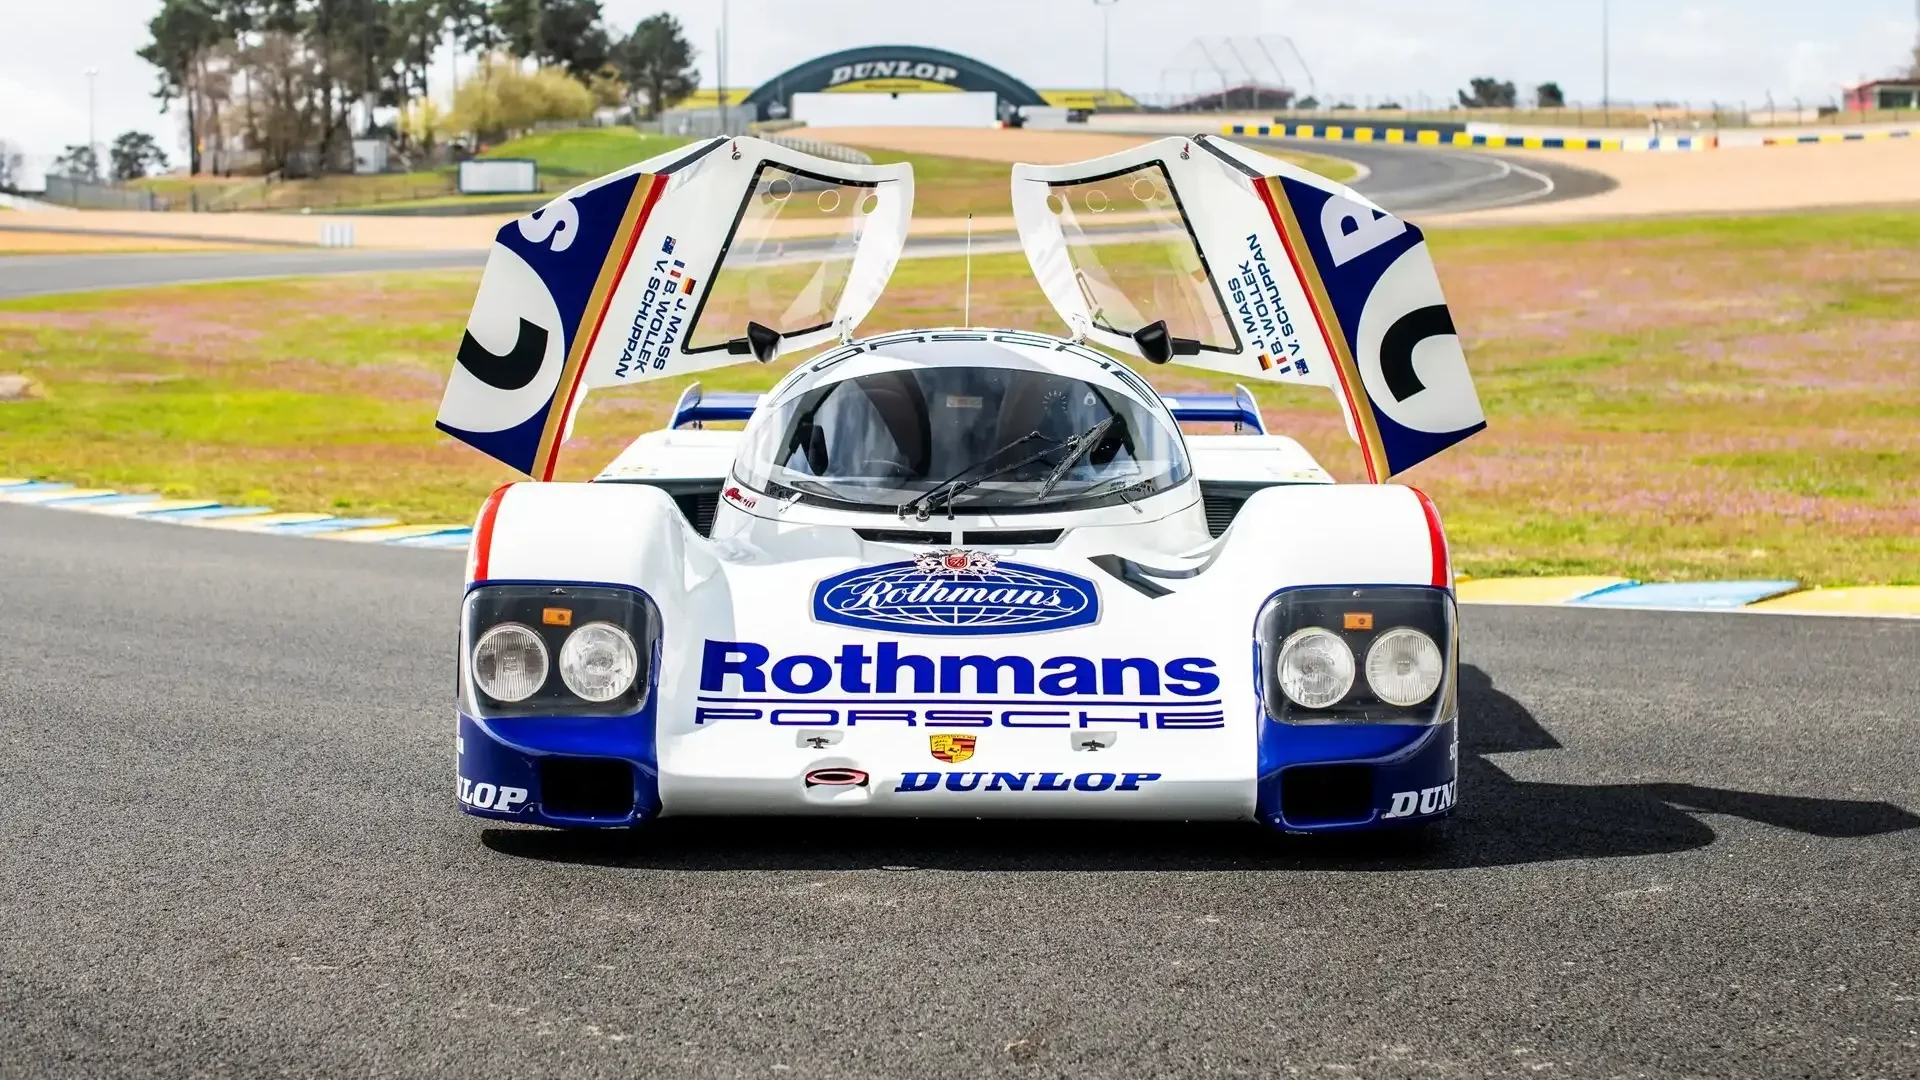 Sale a la venta el chasis 004 del Porsche 962